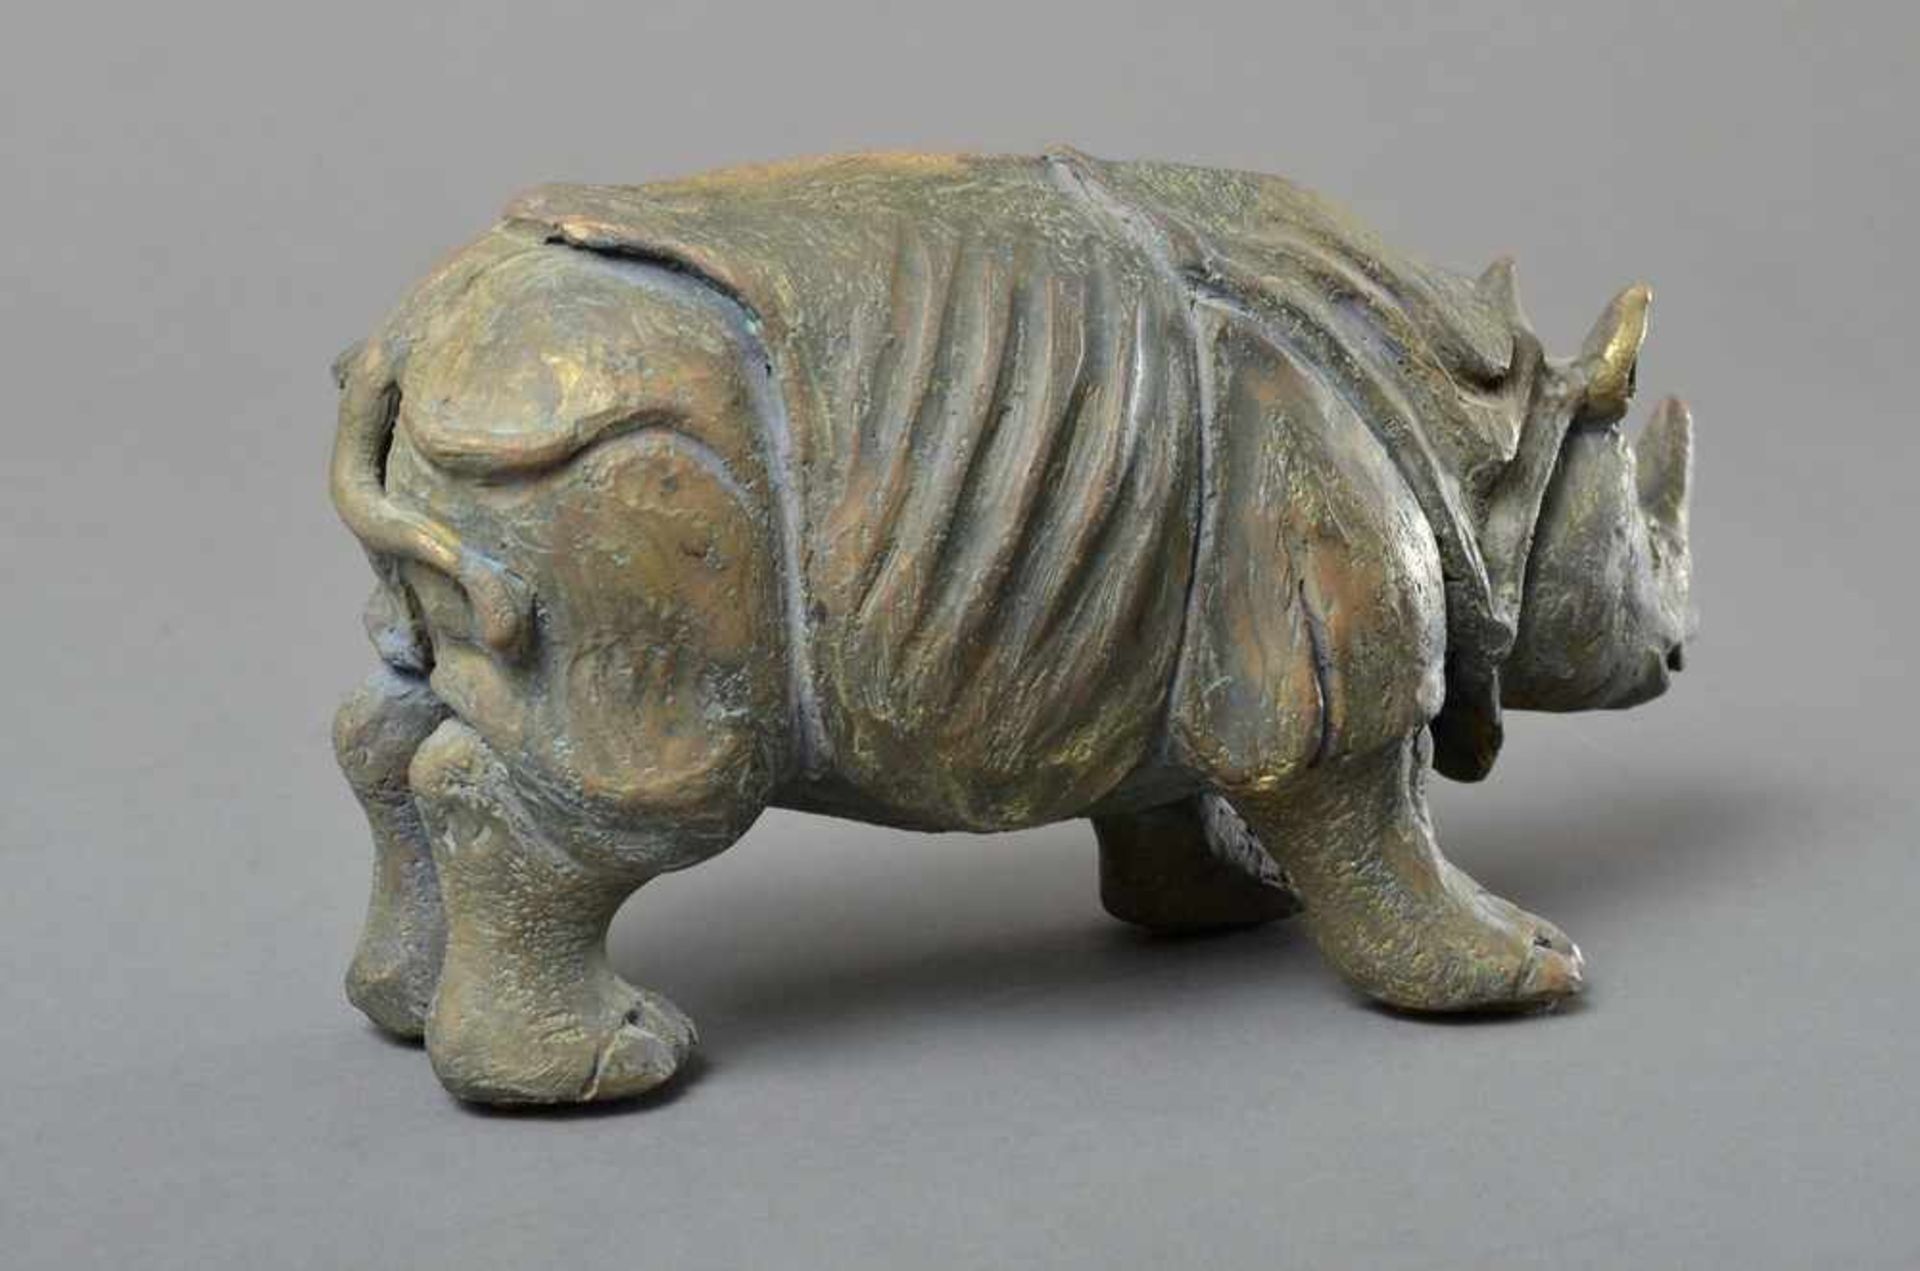 Moderne "Rhinozeros" Skulptur, Ton mit grünlich, goldener Patina, Bauch bez. "H6 WIST", H. 12,5cm, - Bild 2 aus 4